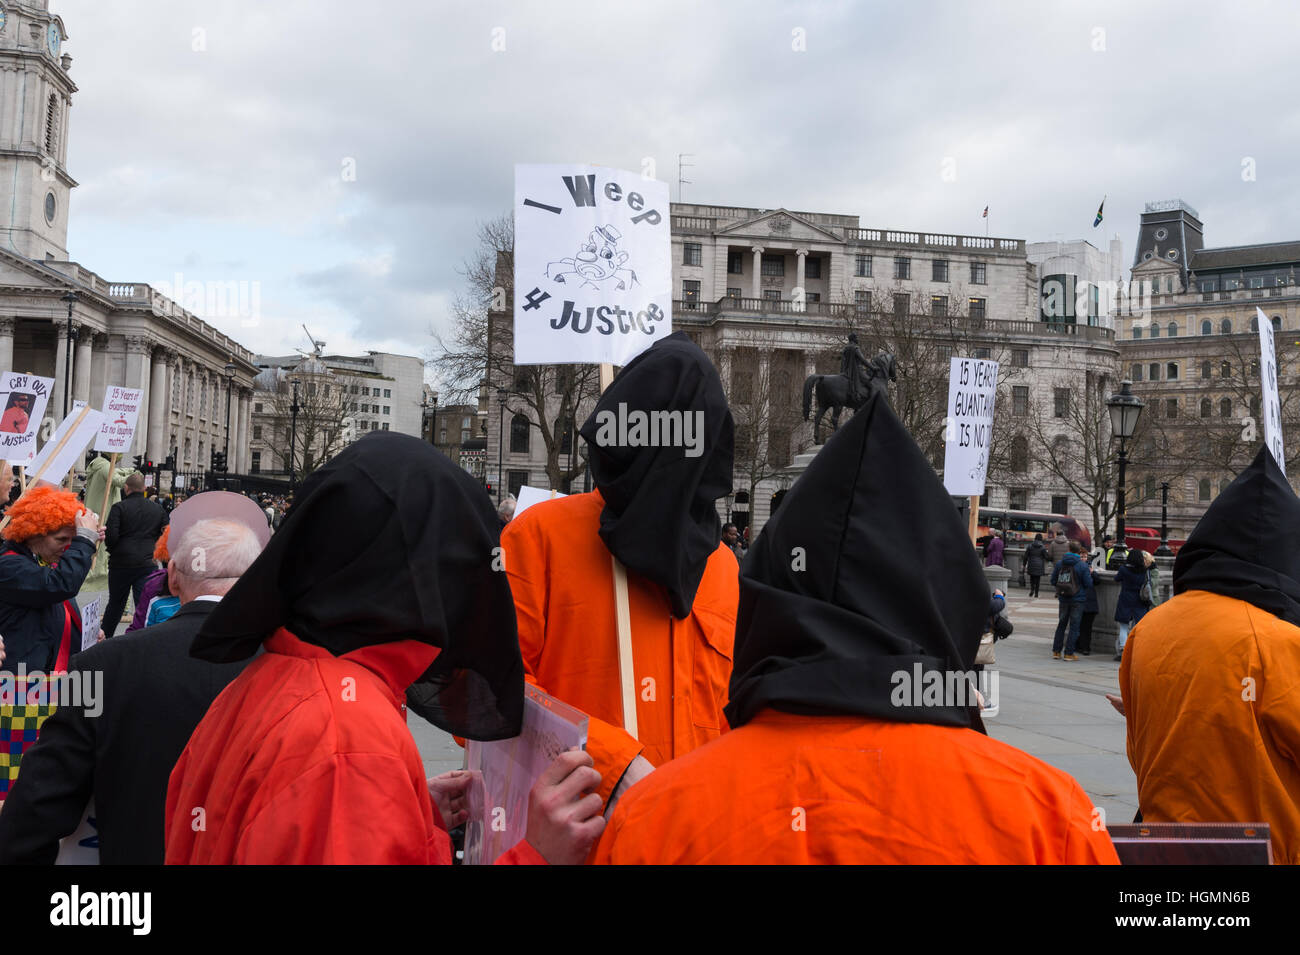 Londres, Royaume-Uni. 11 janvier 2017. La campagne de Guantanamo Londres détient la veillée à Trafalgar Square sur la 15e anniversaire de l'ouverture d'un camp de prisonniers de l'armée américaine à Guantanamo Bay. Les militants marquer la journée avec "Clown ad protestent et exigé la fermeture finale de la "guerre contre le terrorisme"" associé à des violations des droits de l'homme. Environ 50 détenus sont encore conservés dans le camp de Guantanamo Bay. Wiktor Szymanowicz/Alamy Live News Banque D'Images